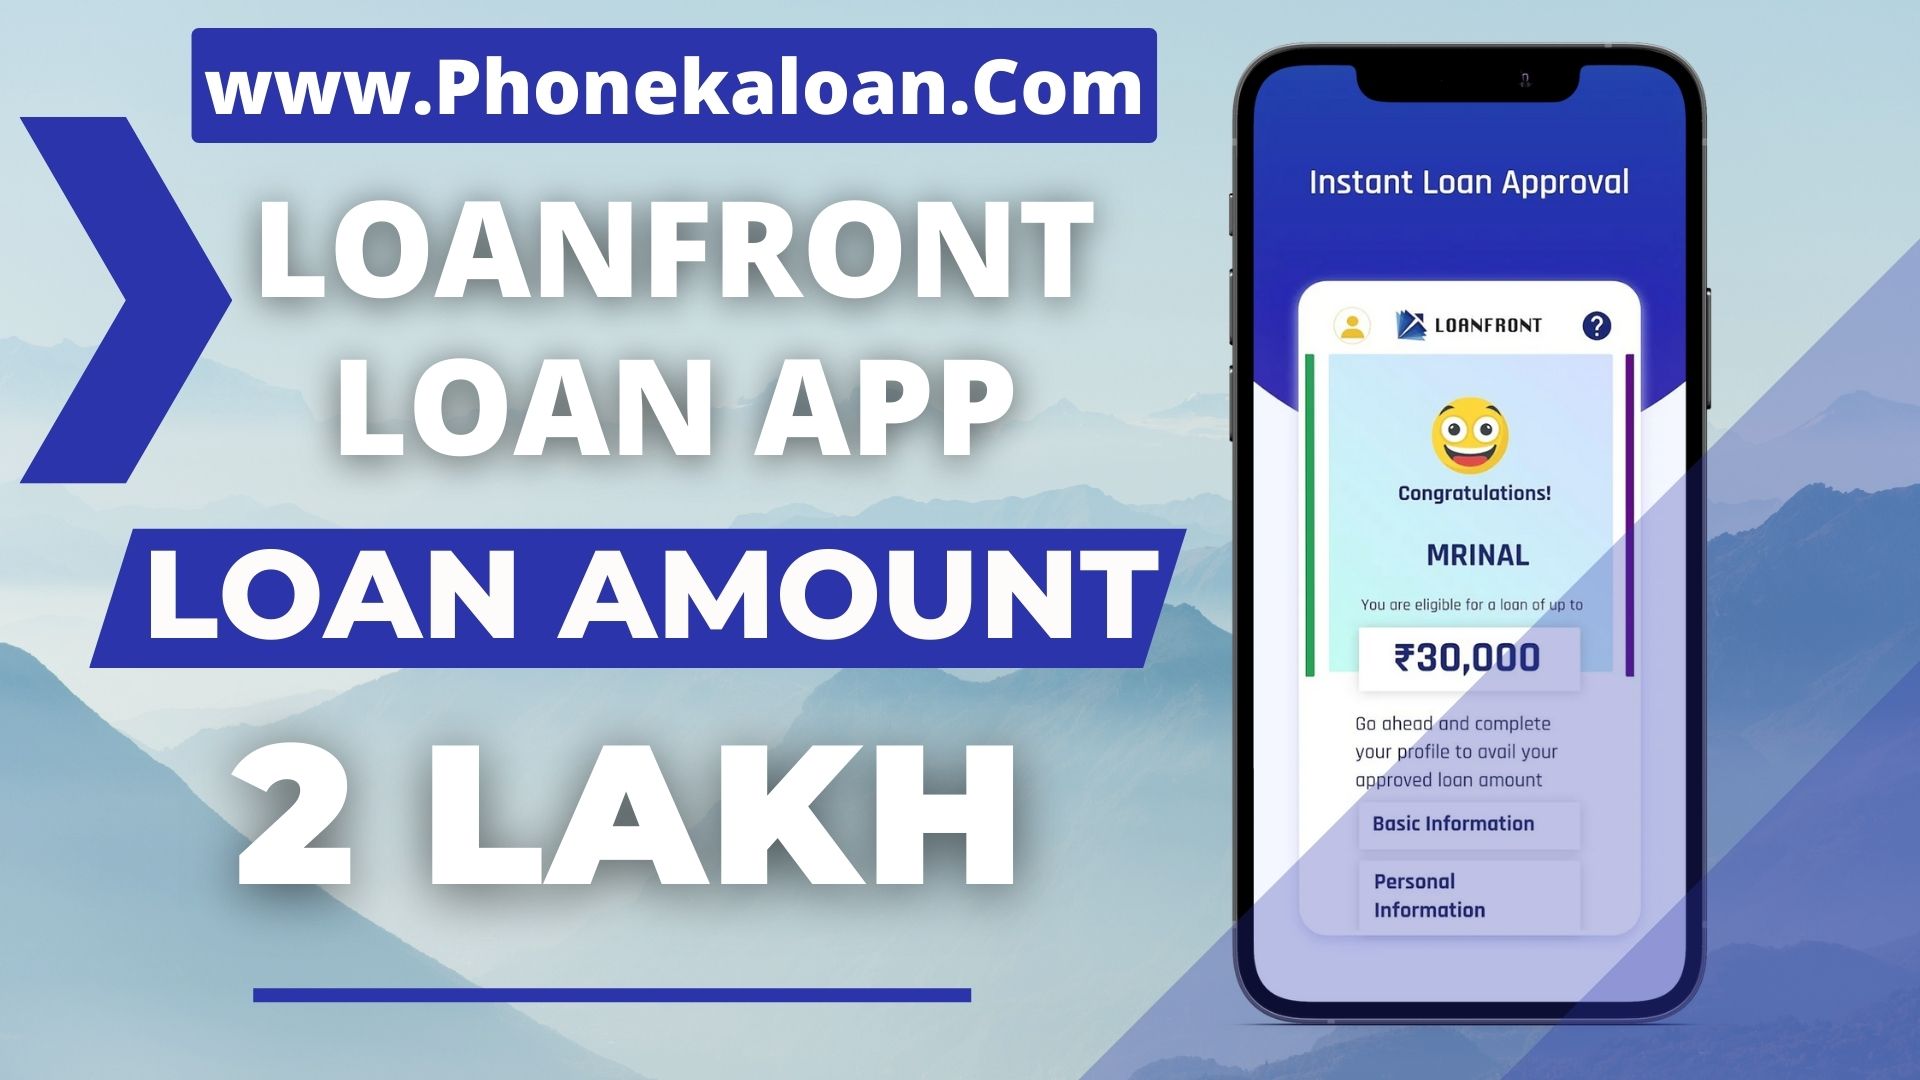 LoanFront Loan App Loan Amount